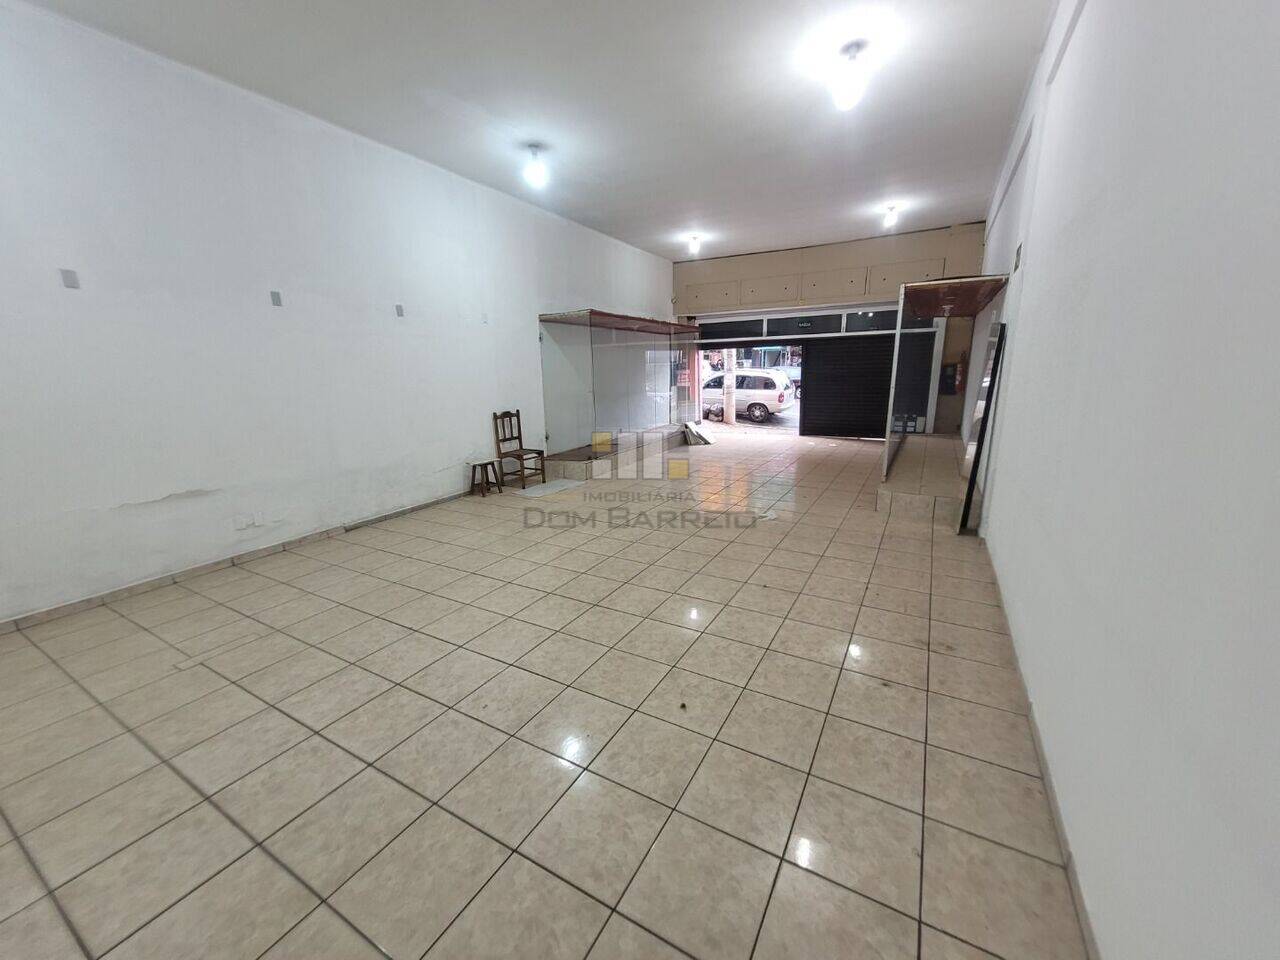 Salão Centro, Sumaré - SP